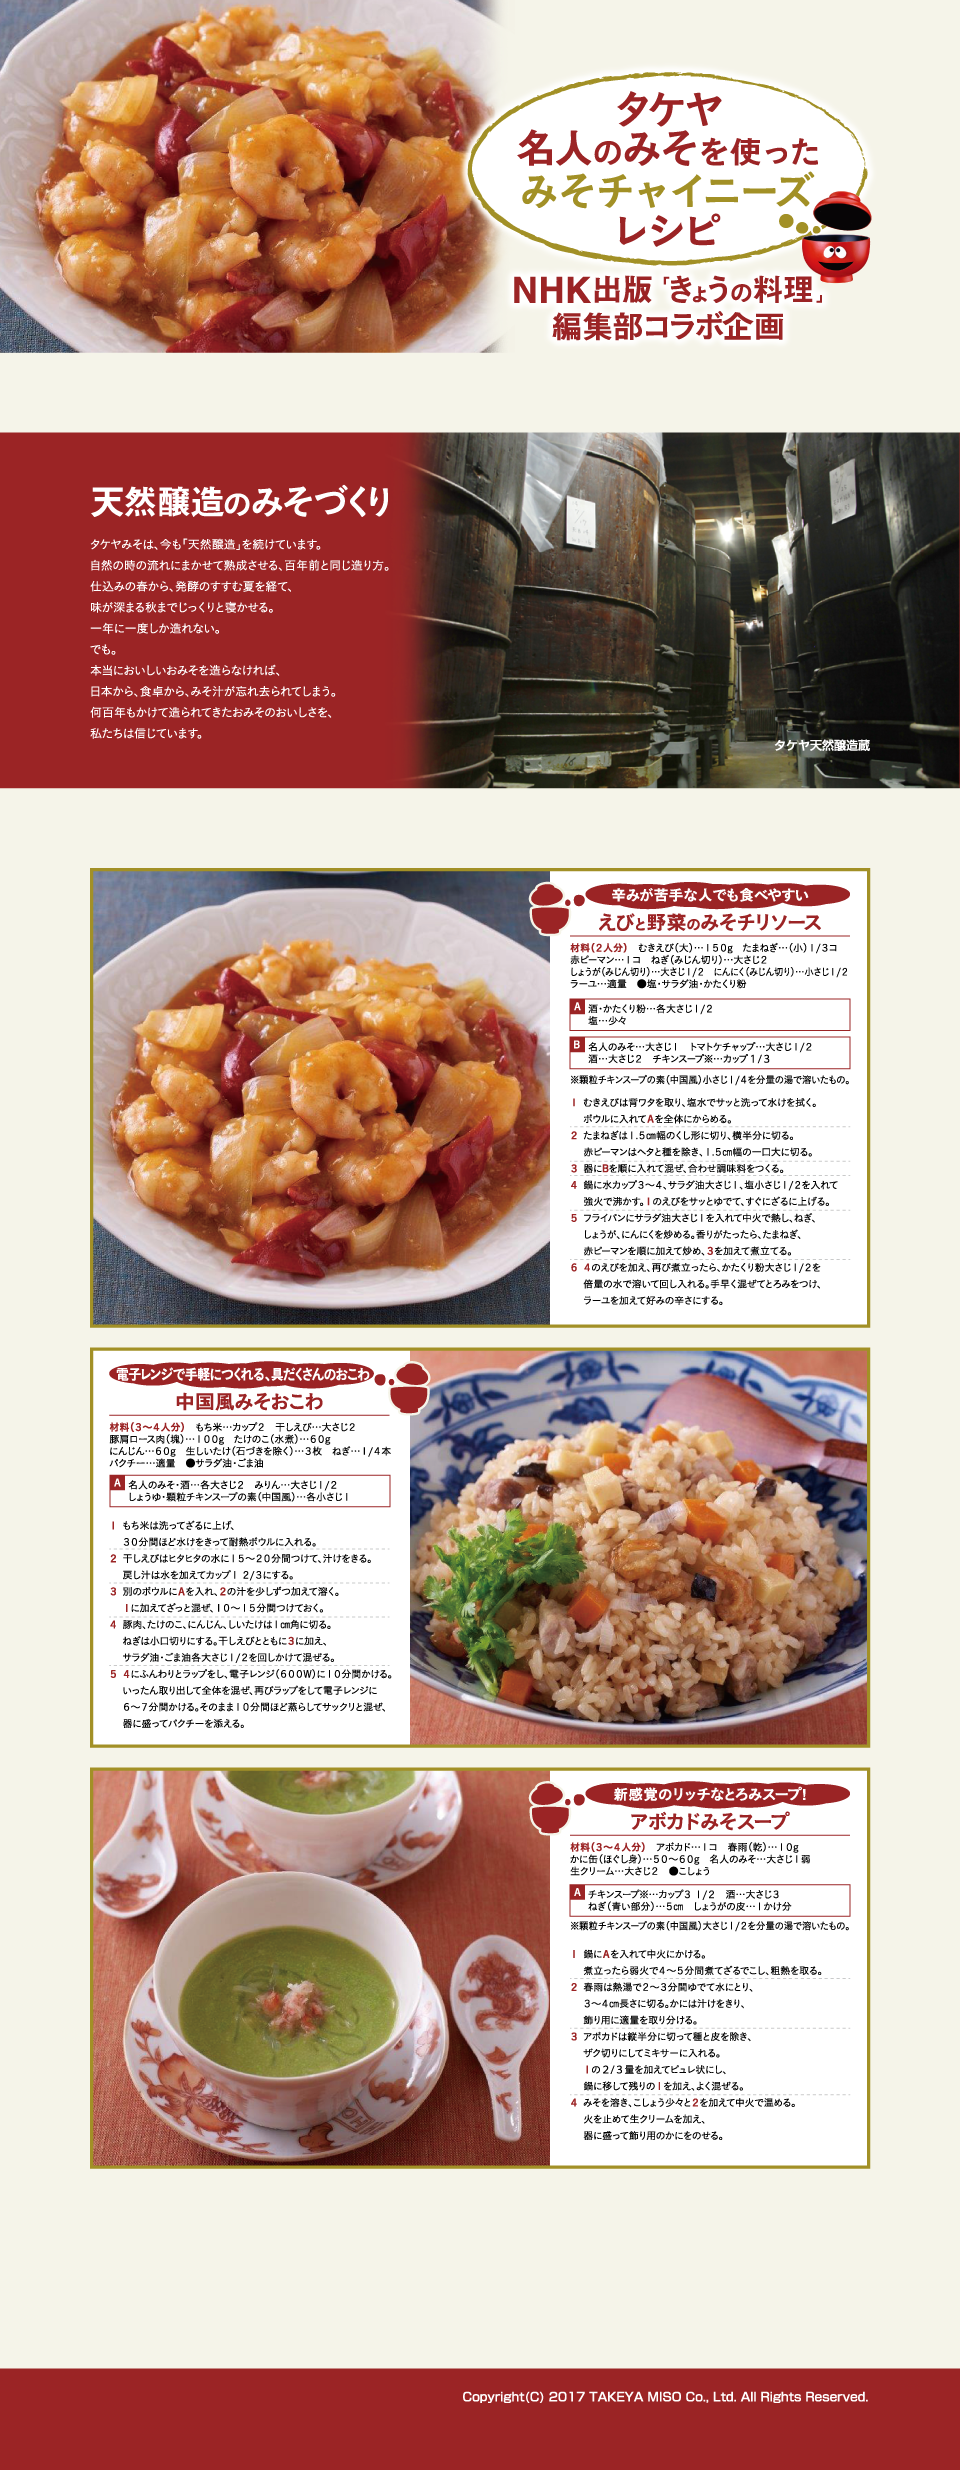 タケヤ名人のみそでつくる NHK出版「きょうの料理」コラボレシピ